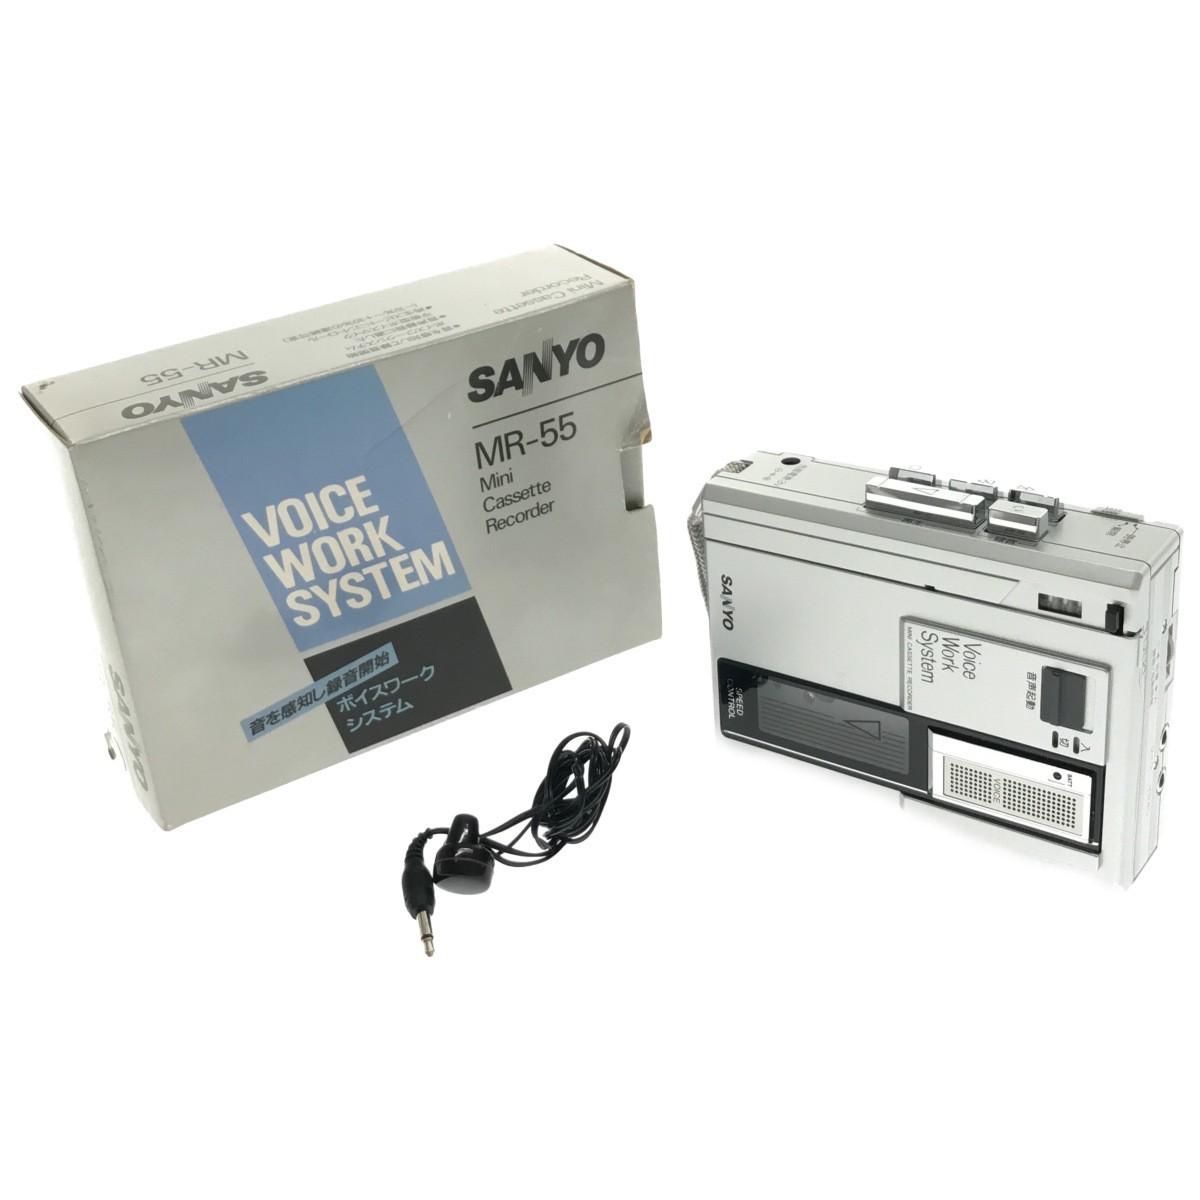 【動作美品】SANYO MR-55 カセットレコーダー シルバー ボイスワークシステム 元箱入 再生スピードコントロール 銀 当時物 昭和レトロ H808_画像1